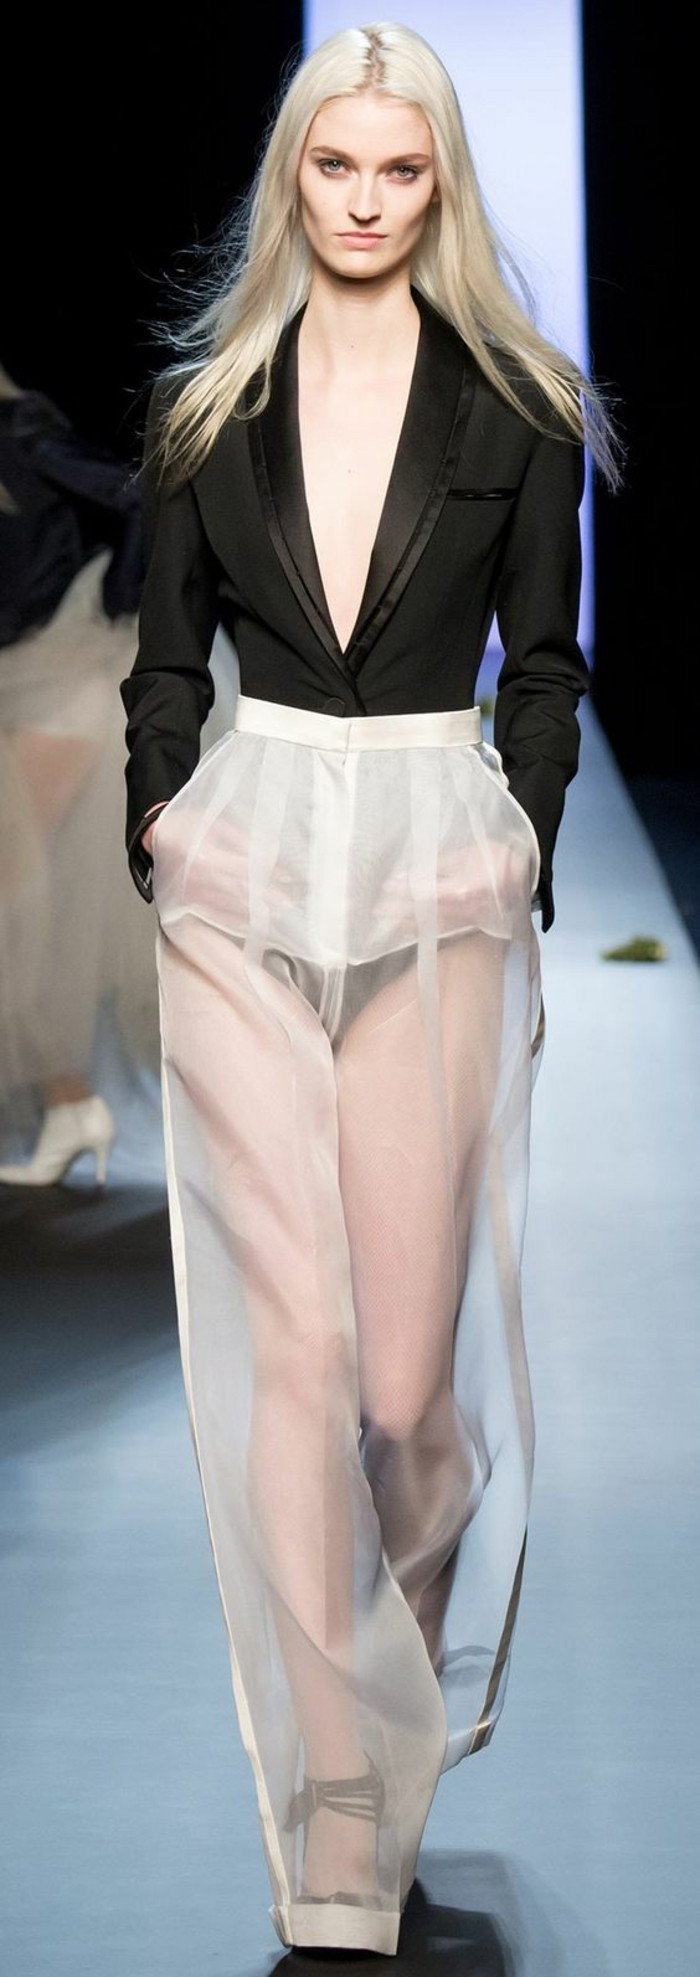 Les tendances de la mode voir-à travers les robes de pantalons de mode catwalk